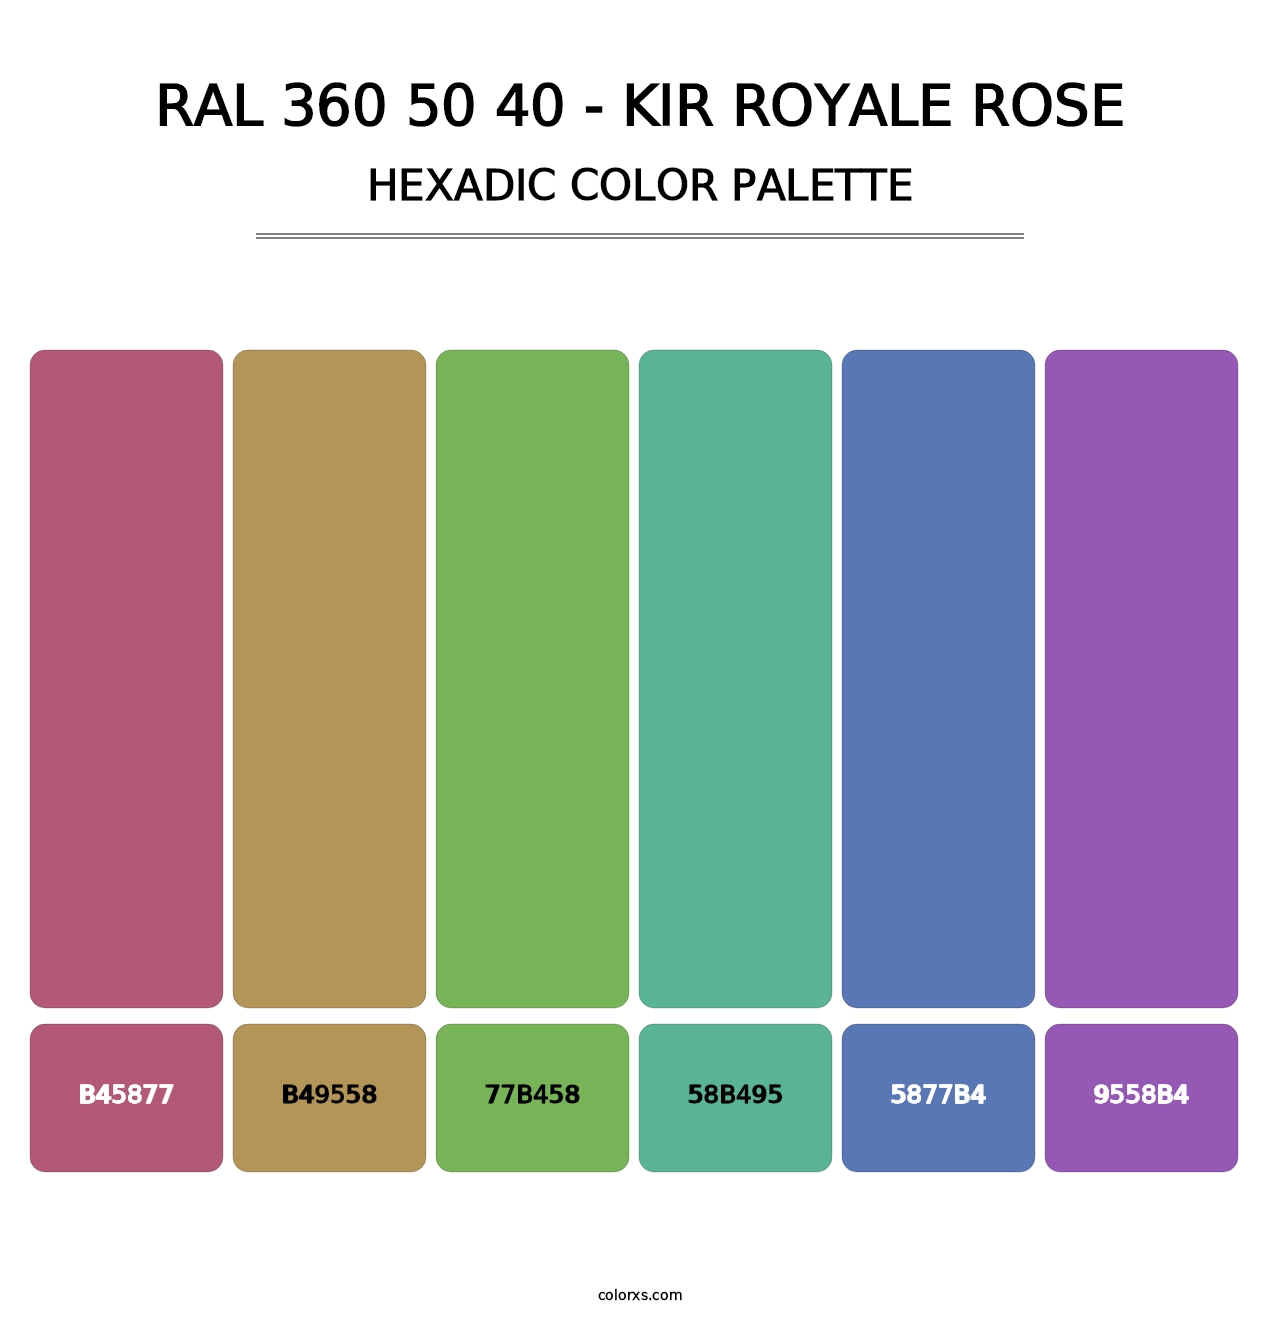 RAL 360 50 40 - Kir Royale Rose - Hexadic Color Palette